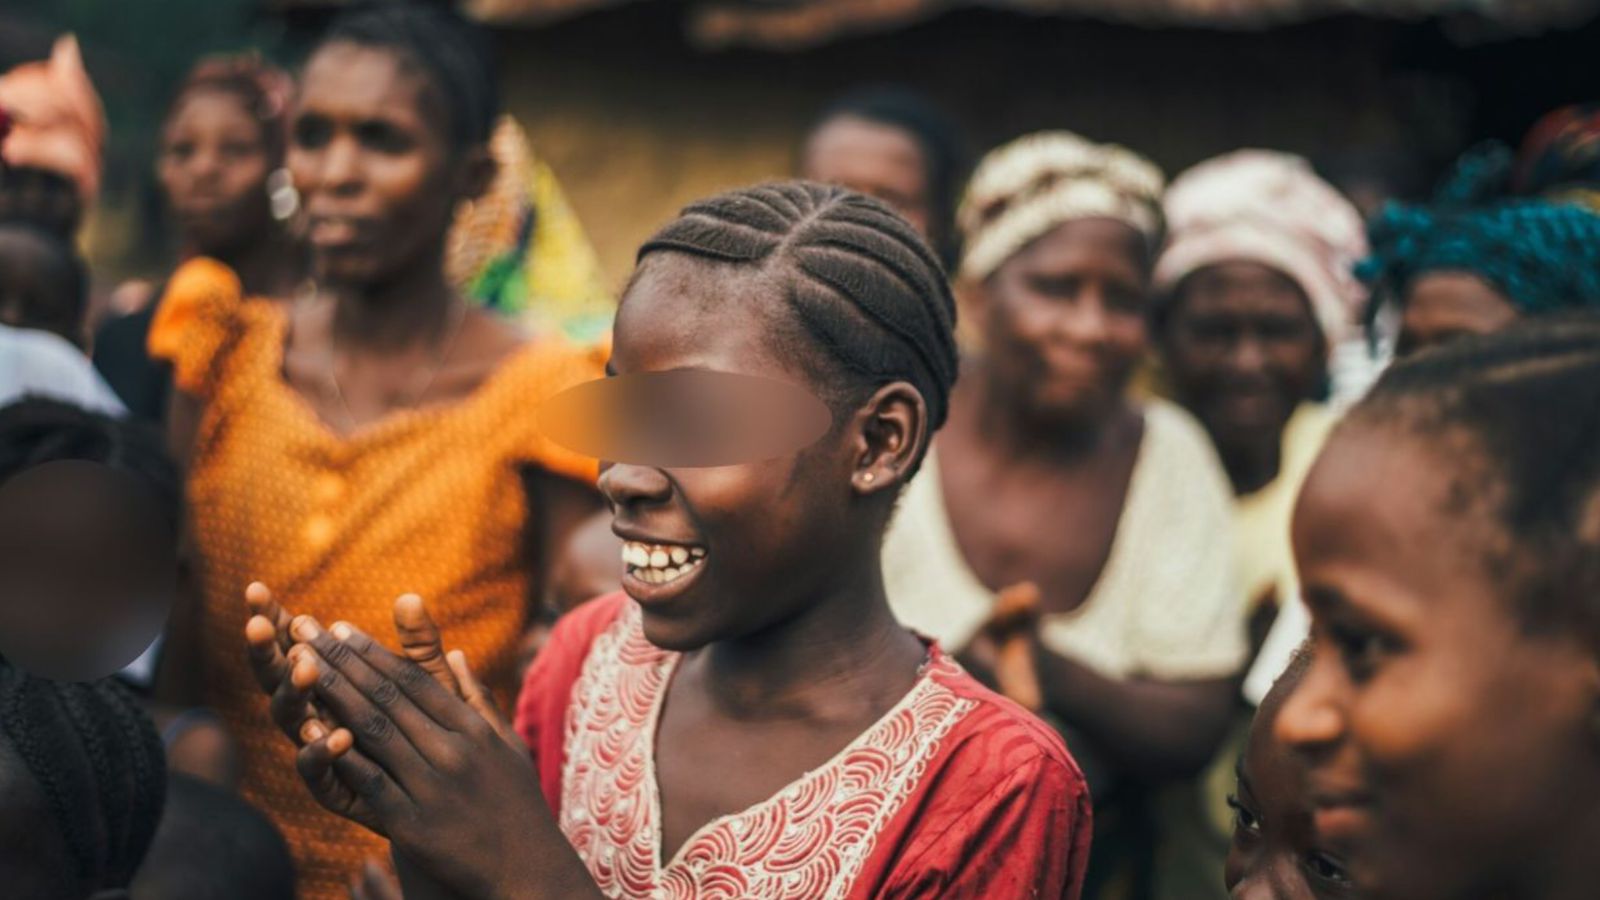 “Das trevas para a luz”: Adolescente feiticeira é liberta por Jesus na África